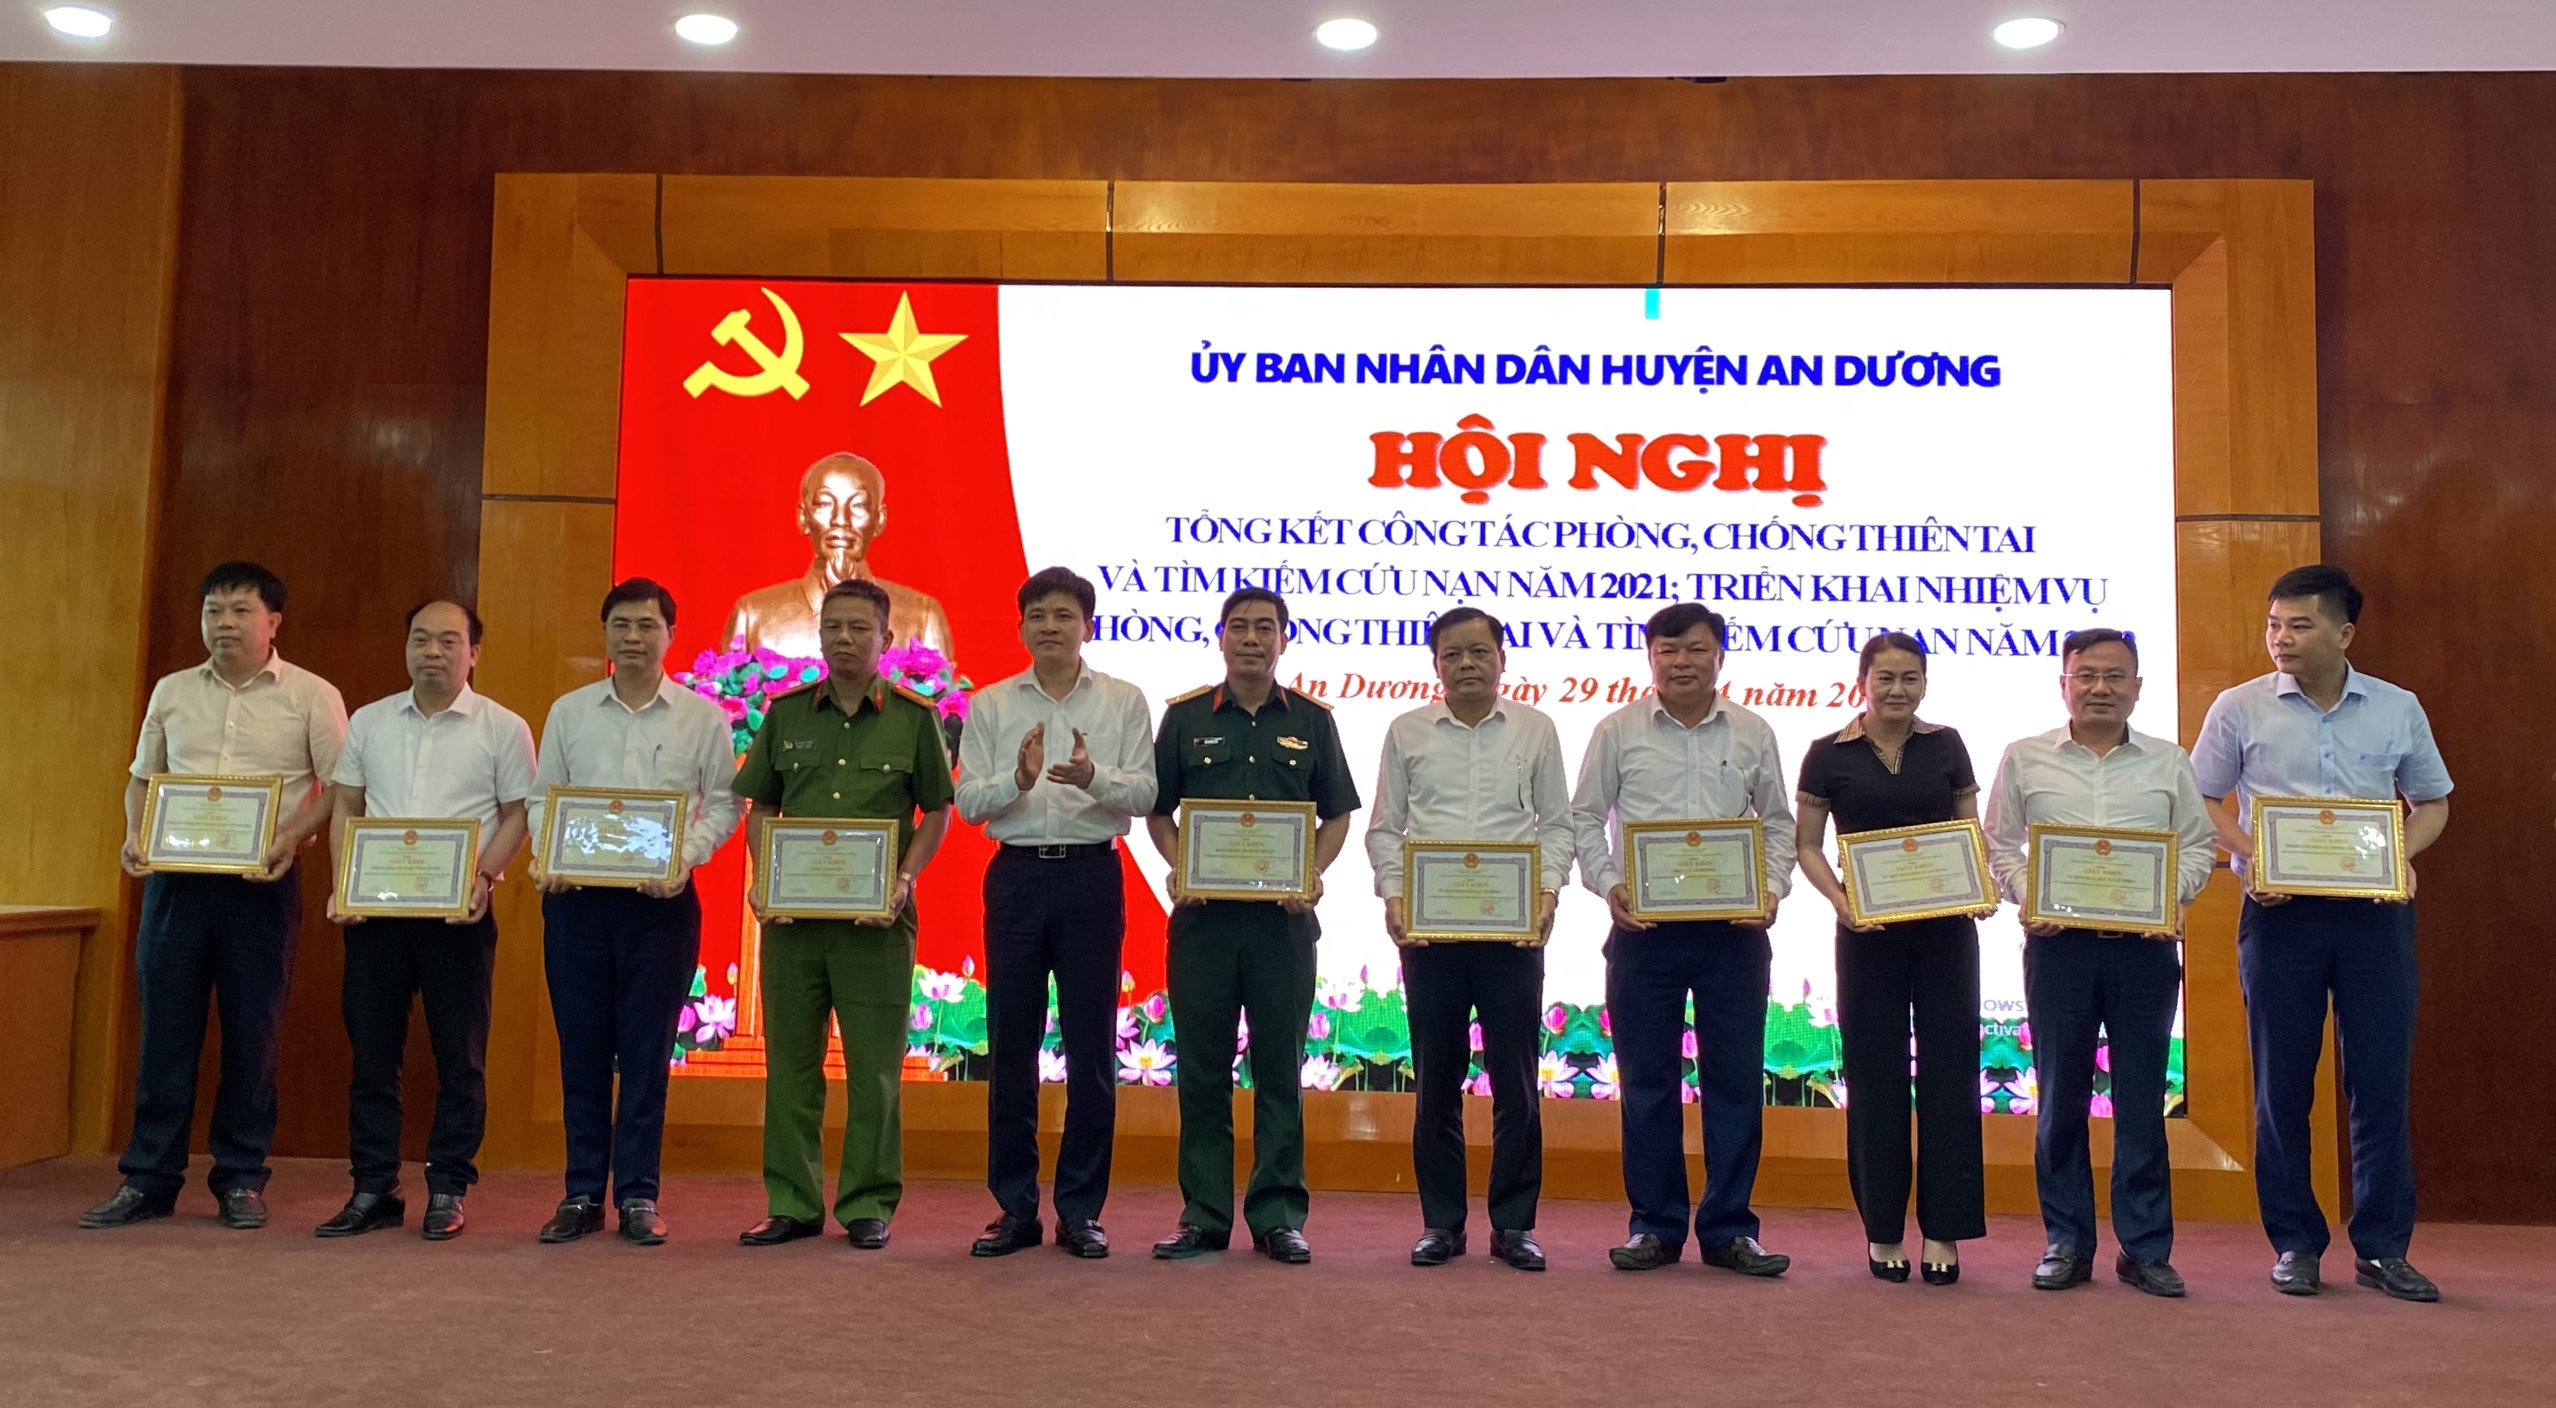 Lãnh đạo UBND huyện An Dương trao giấy khen tặng các tập thể, cá nhân có thành tích xuất sắc trong công tác PCTT-TKCN năm 2021.